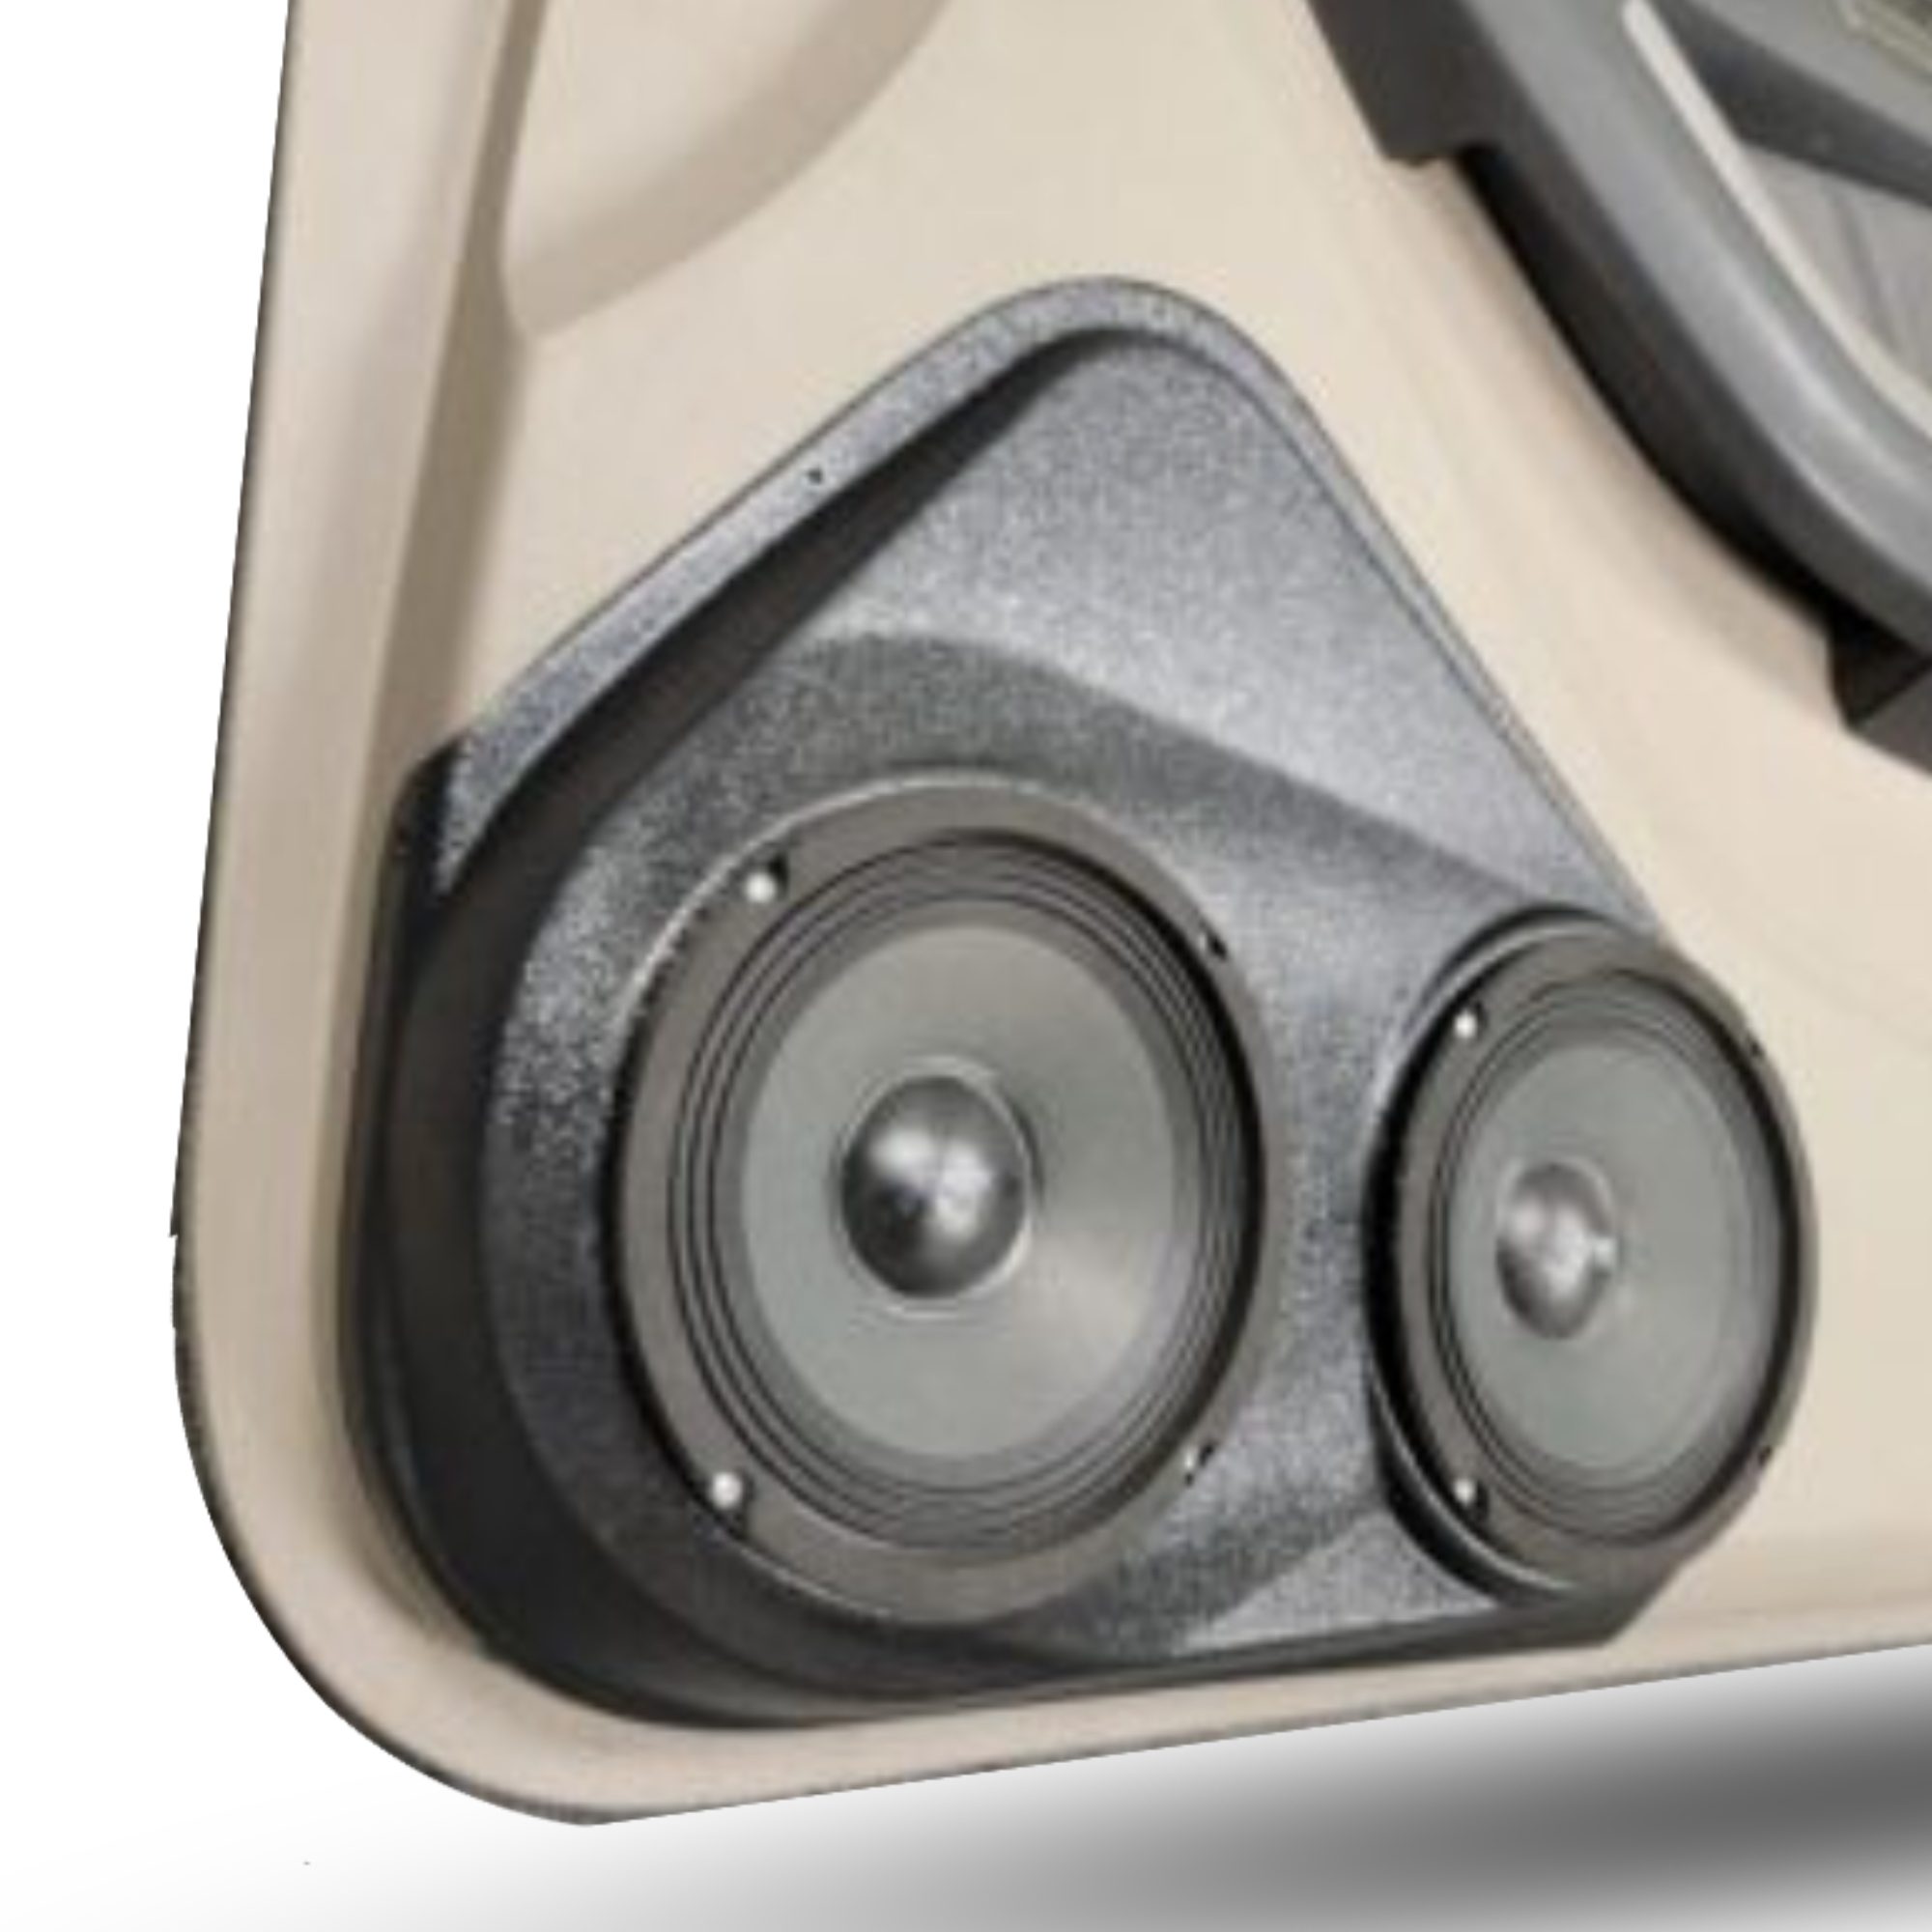 custom speaker pods for toyota 4runner dual 6.5" speakers for front door car stereo upgrade